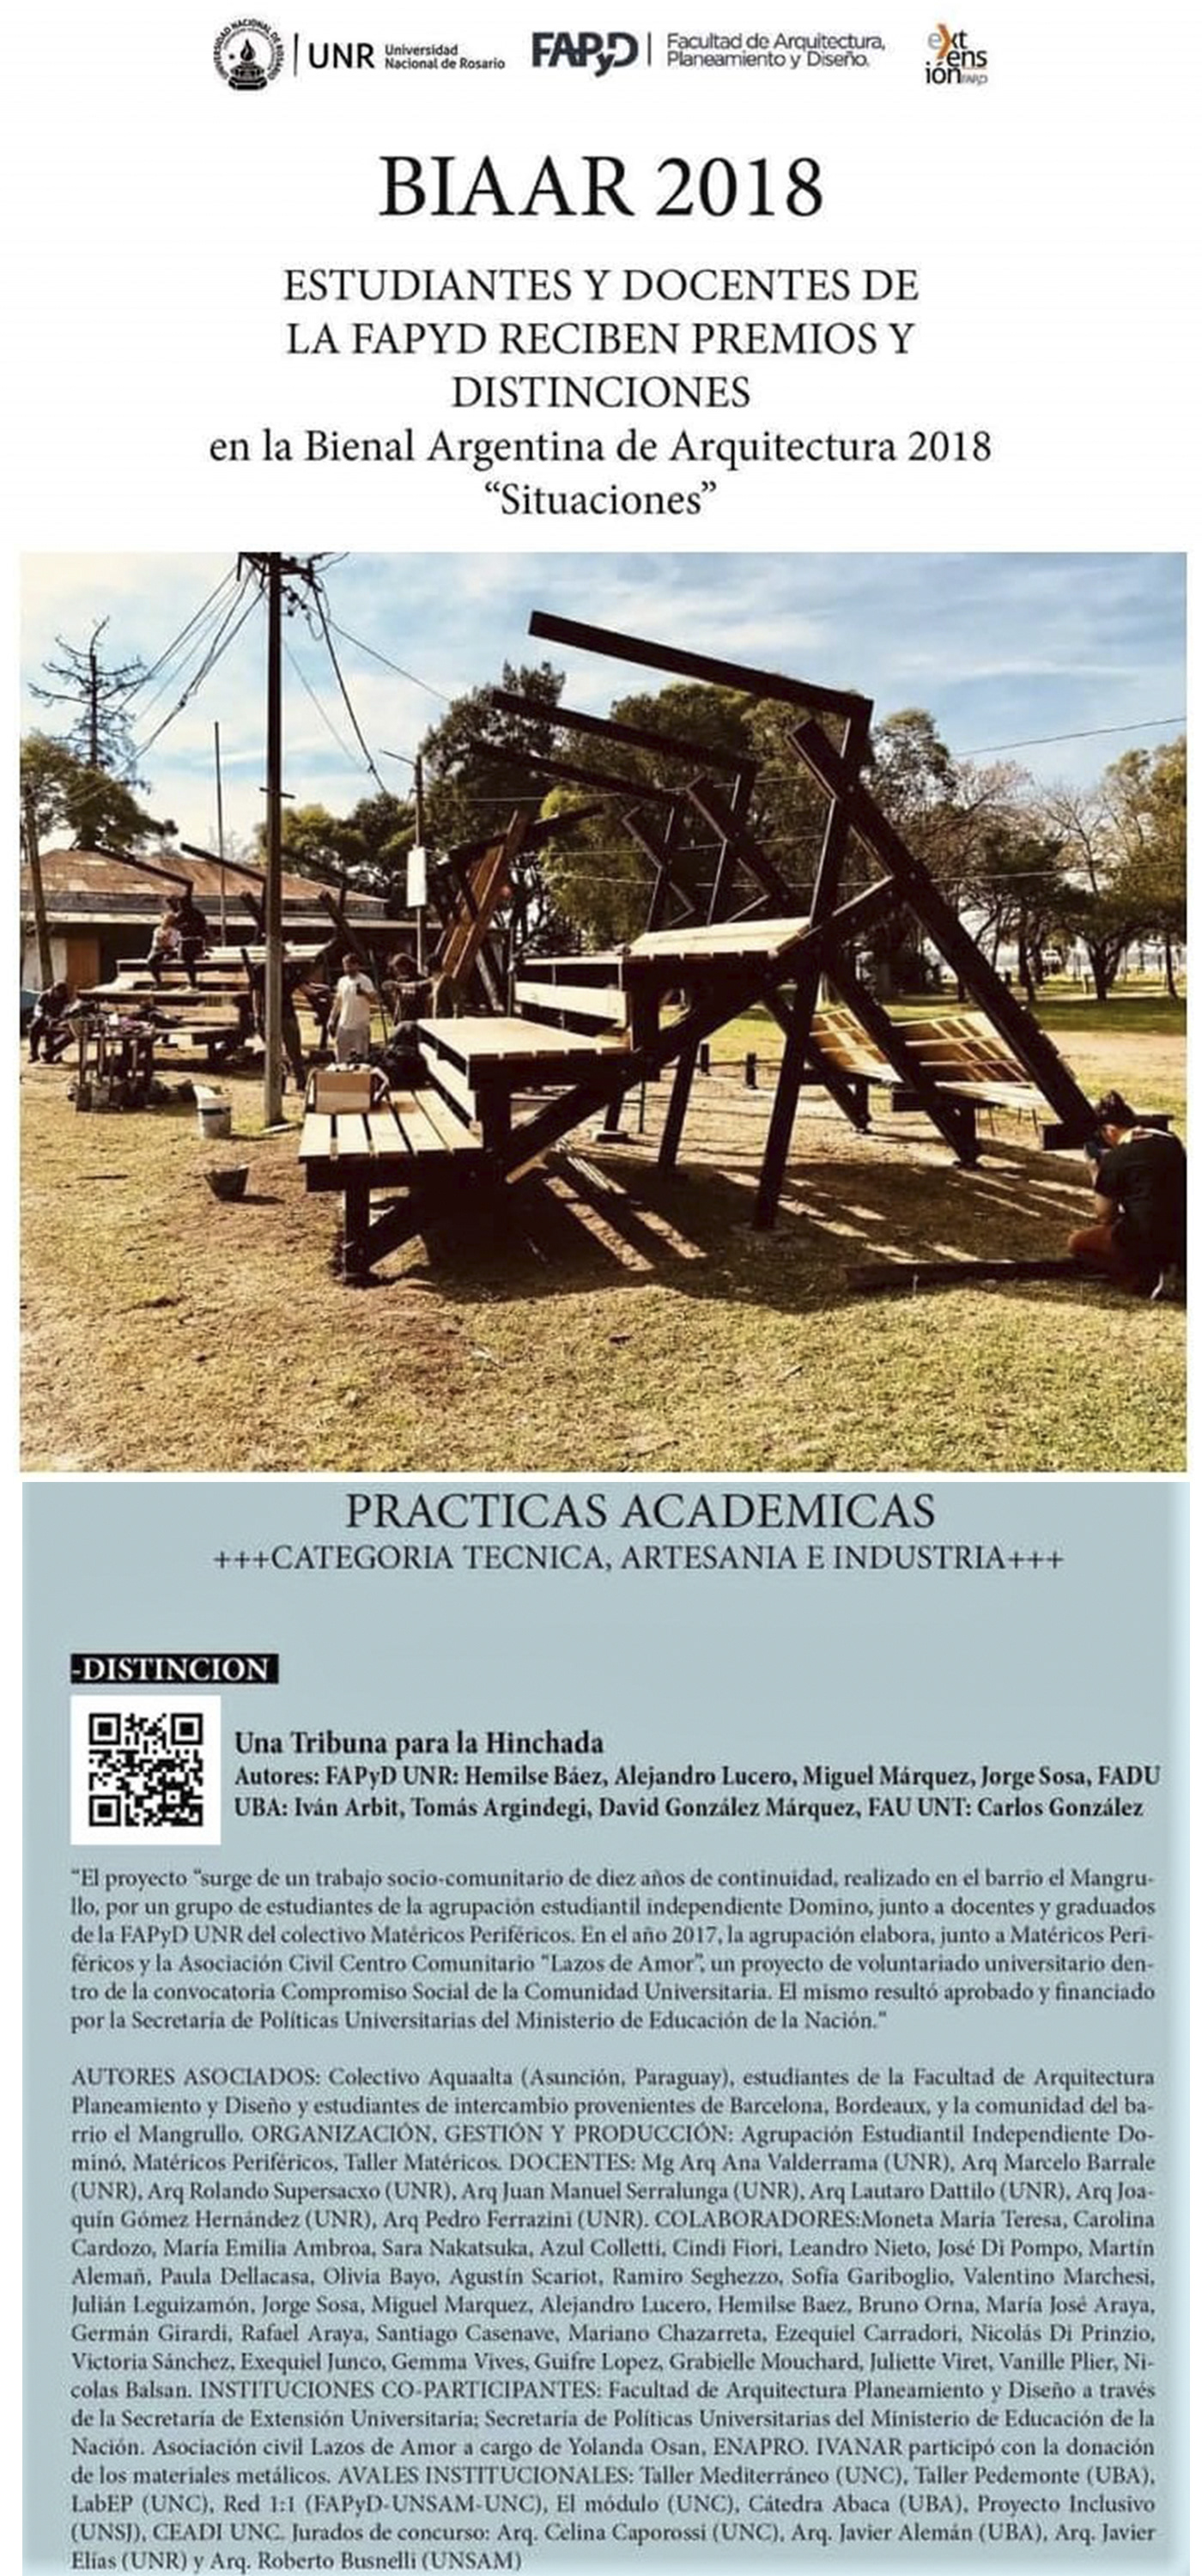 2018 year bienal distinción GRANDSTAND madera premio revista rosario situation Tribuna